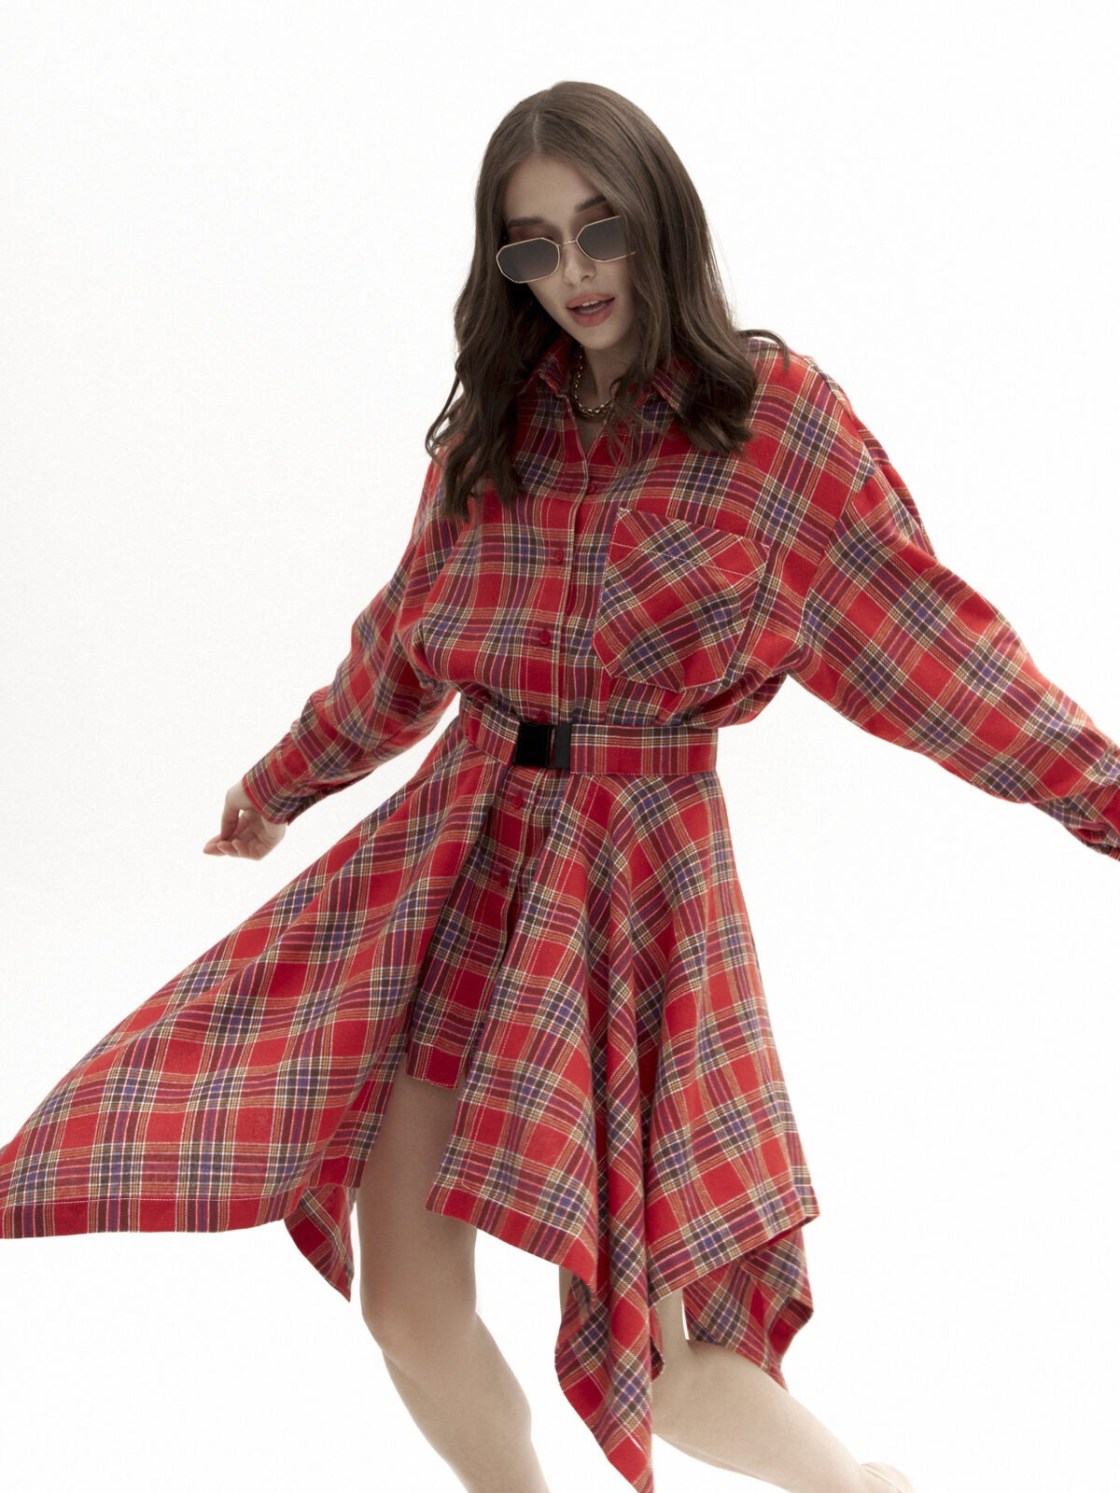 Привет романтике и свободе: российский бренд KSENIA KNYAZEVA представил летнюю коллекцию женской одежды 202410